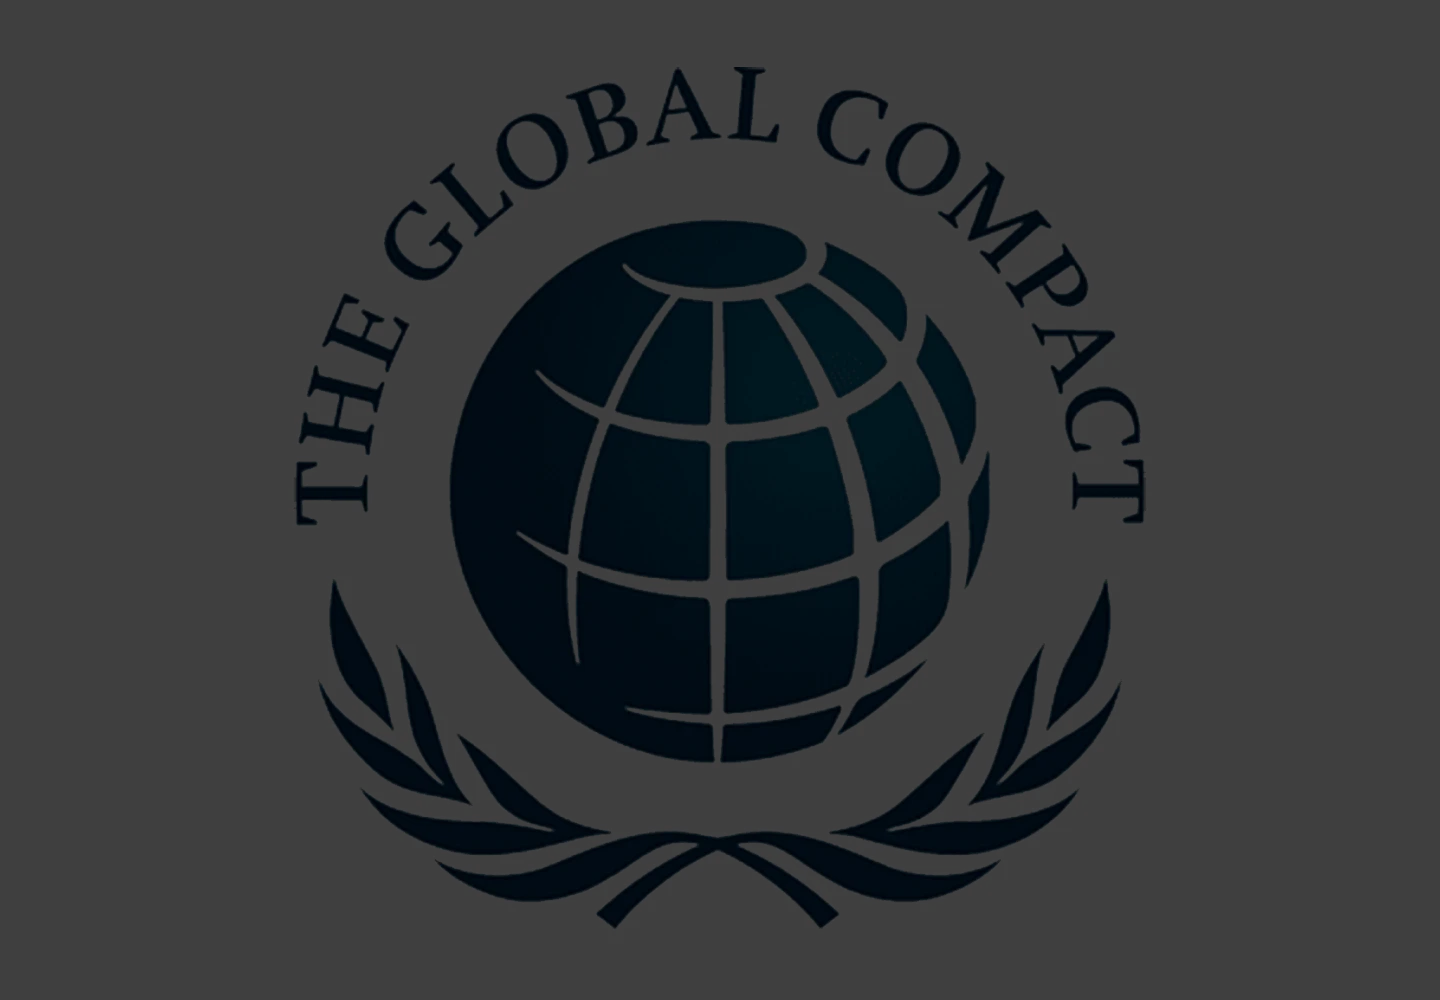 Logotipo do Pacto Global da ONU, com nome da iniciativa em inglês: The Global Compact.